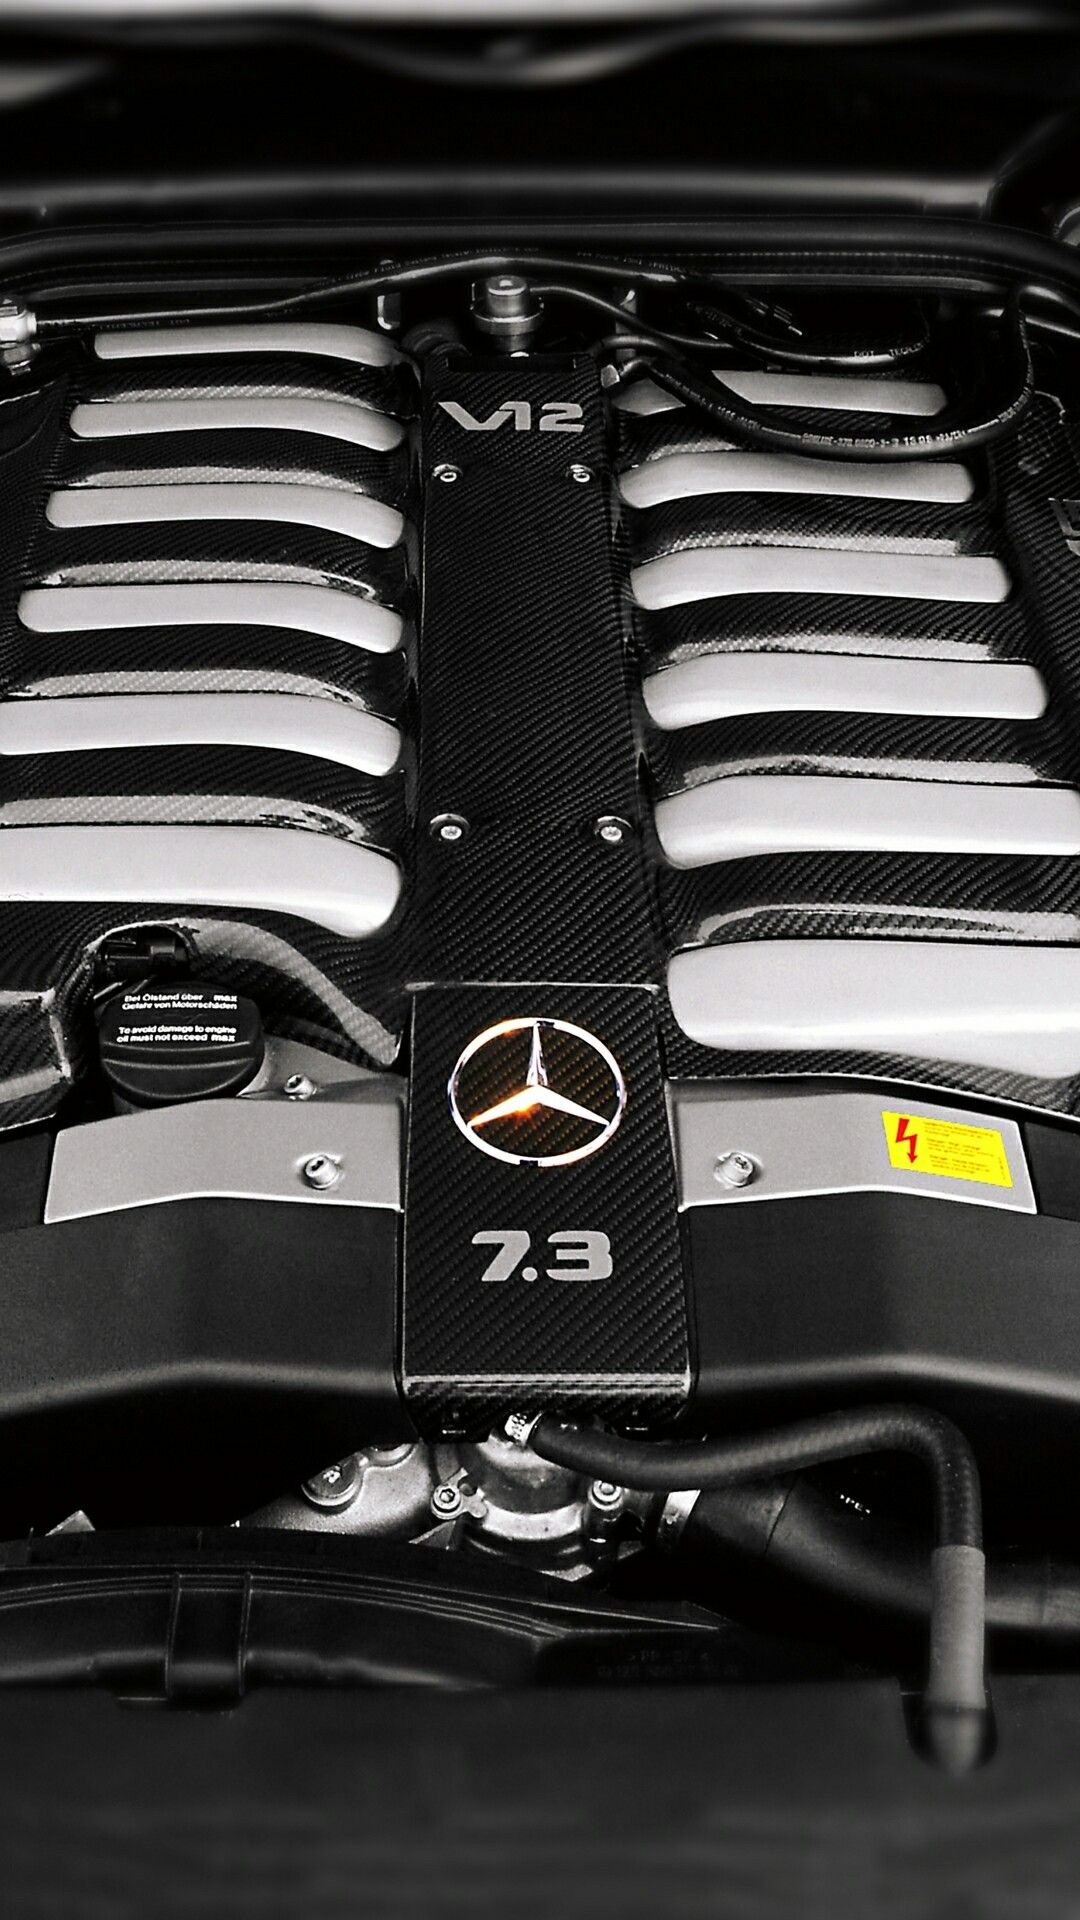 7.3 v12. Mercedes w140 v12. W140 AMG 7.3. W12 140 Мерседес 7.3. Мотор 7.3 v12 Brabus.